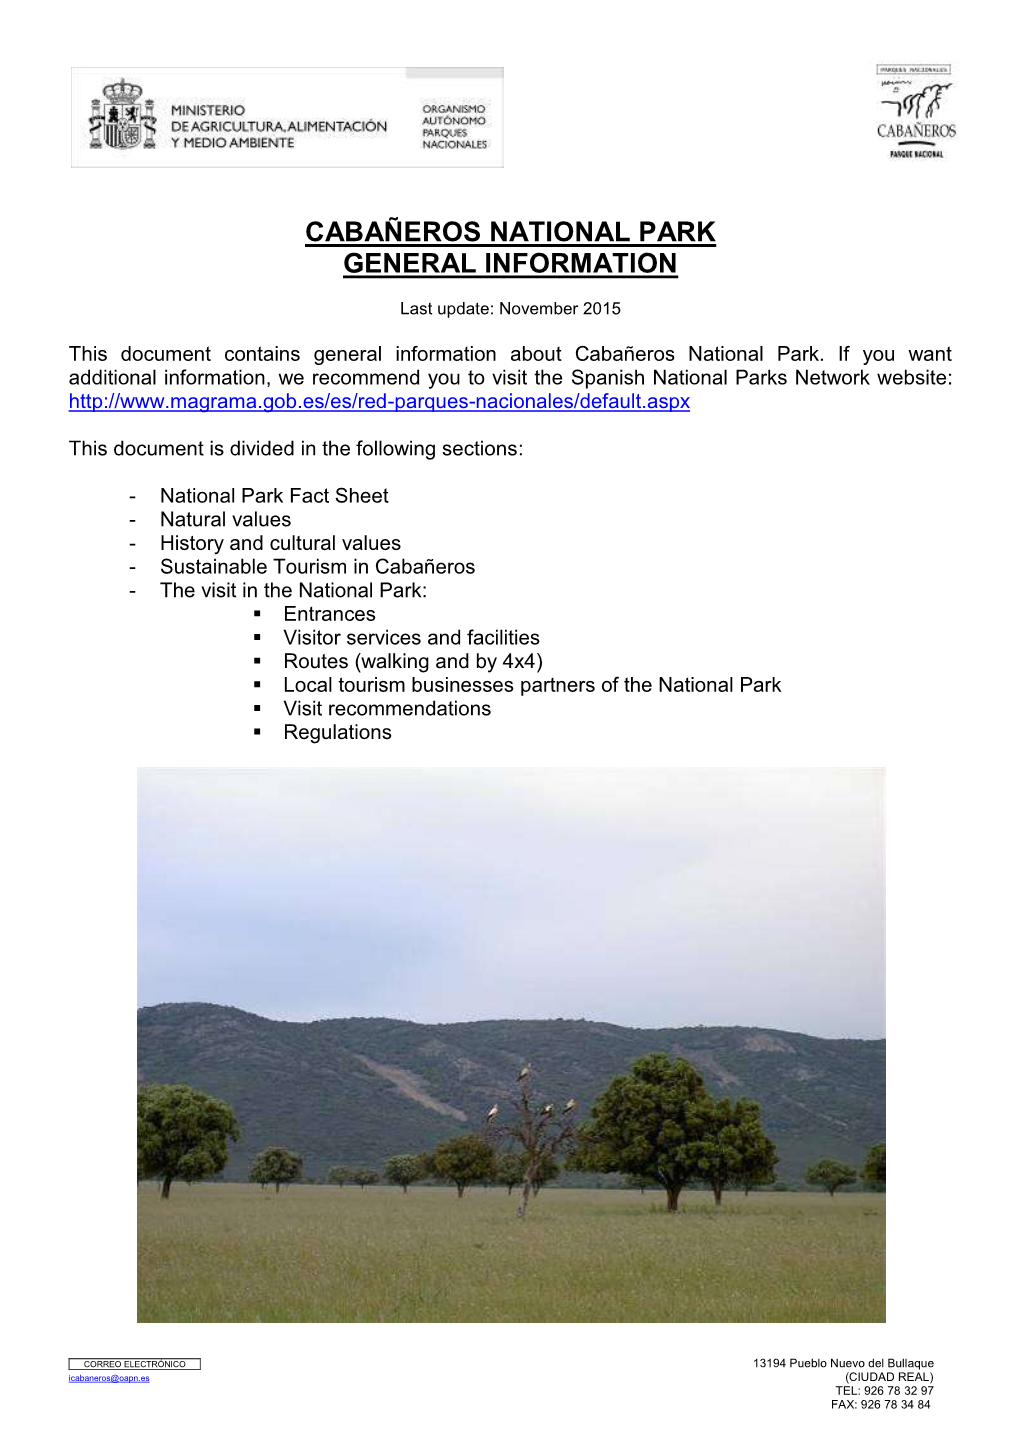 Cabañeros National Park General Information